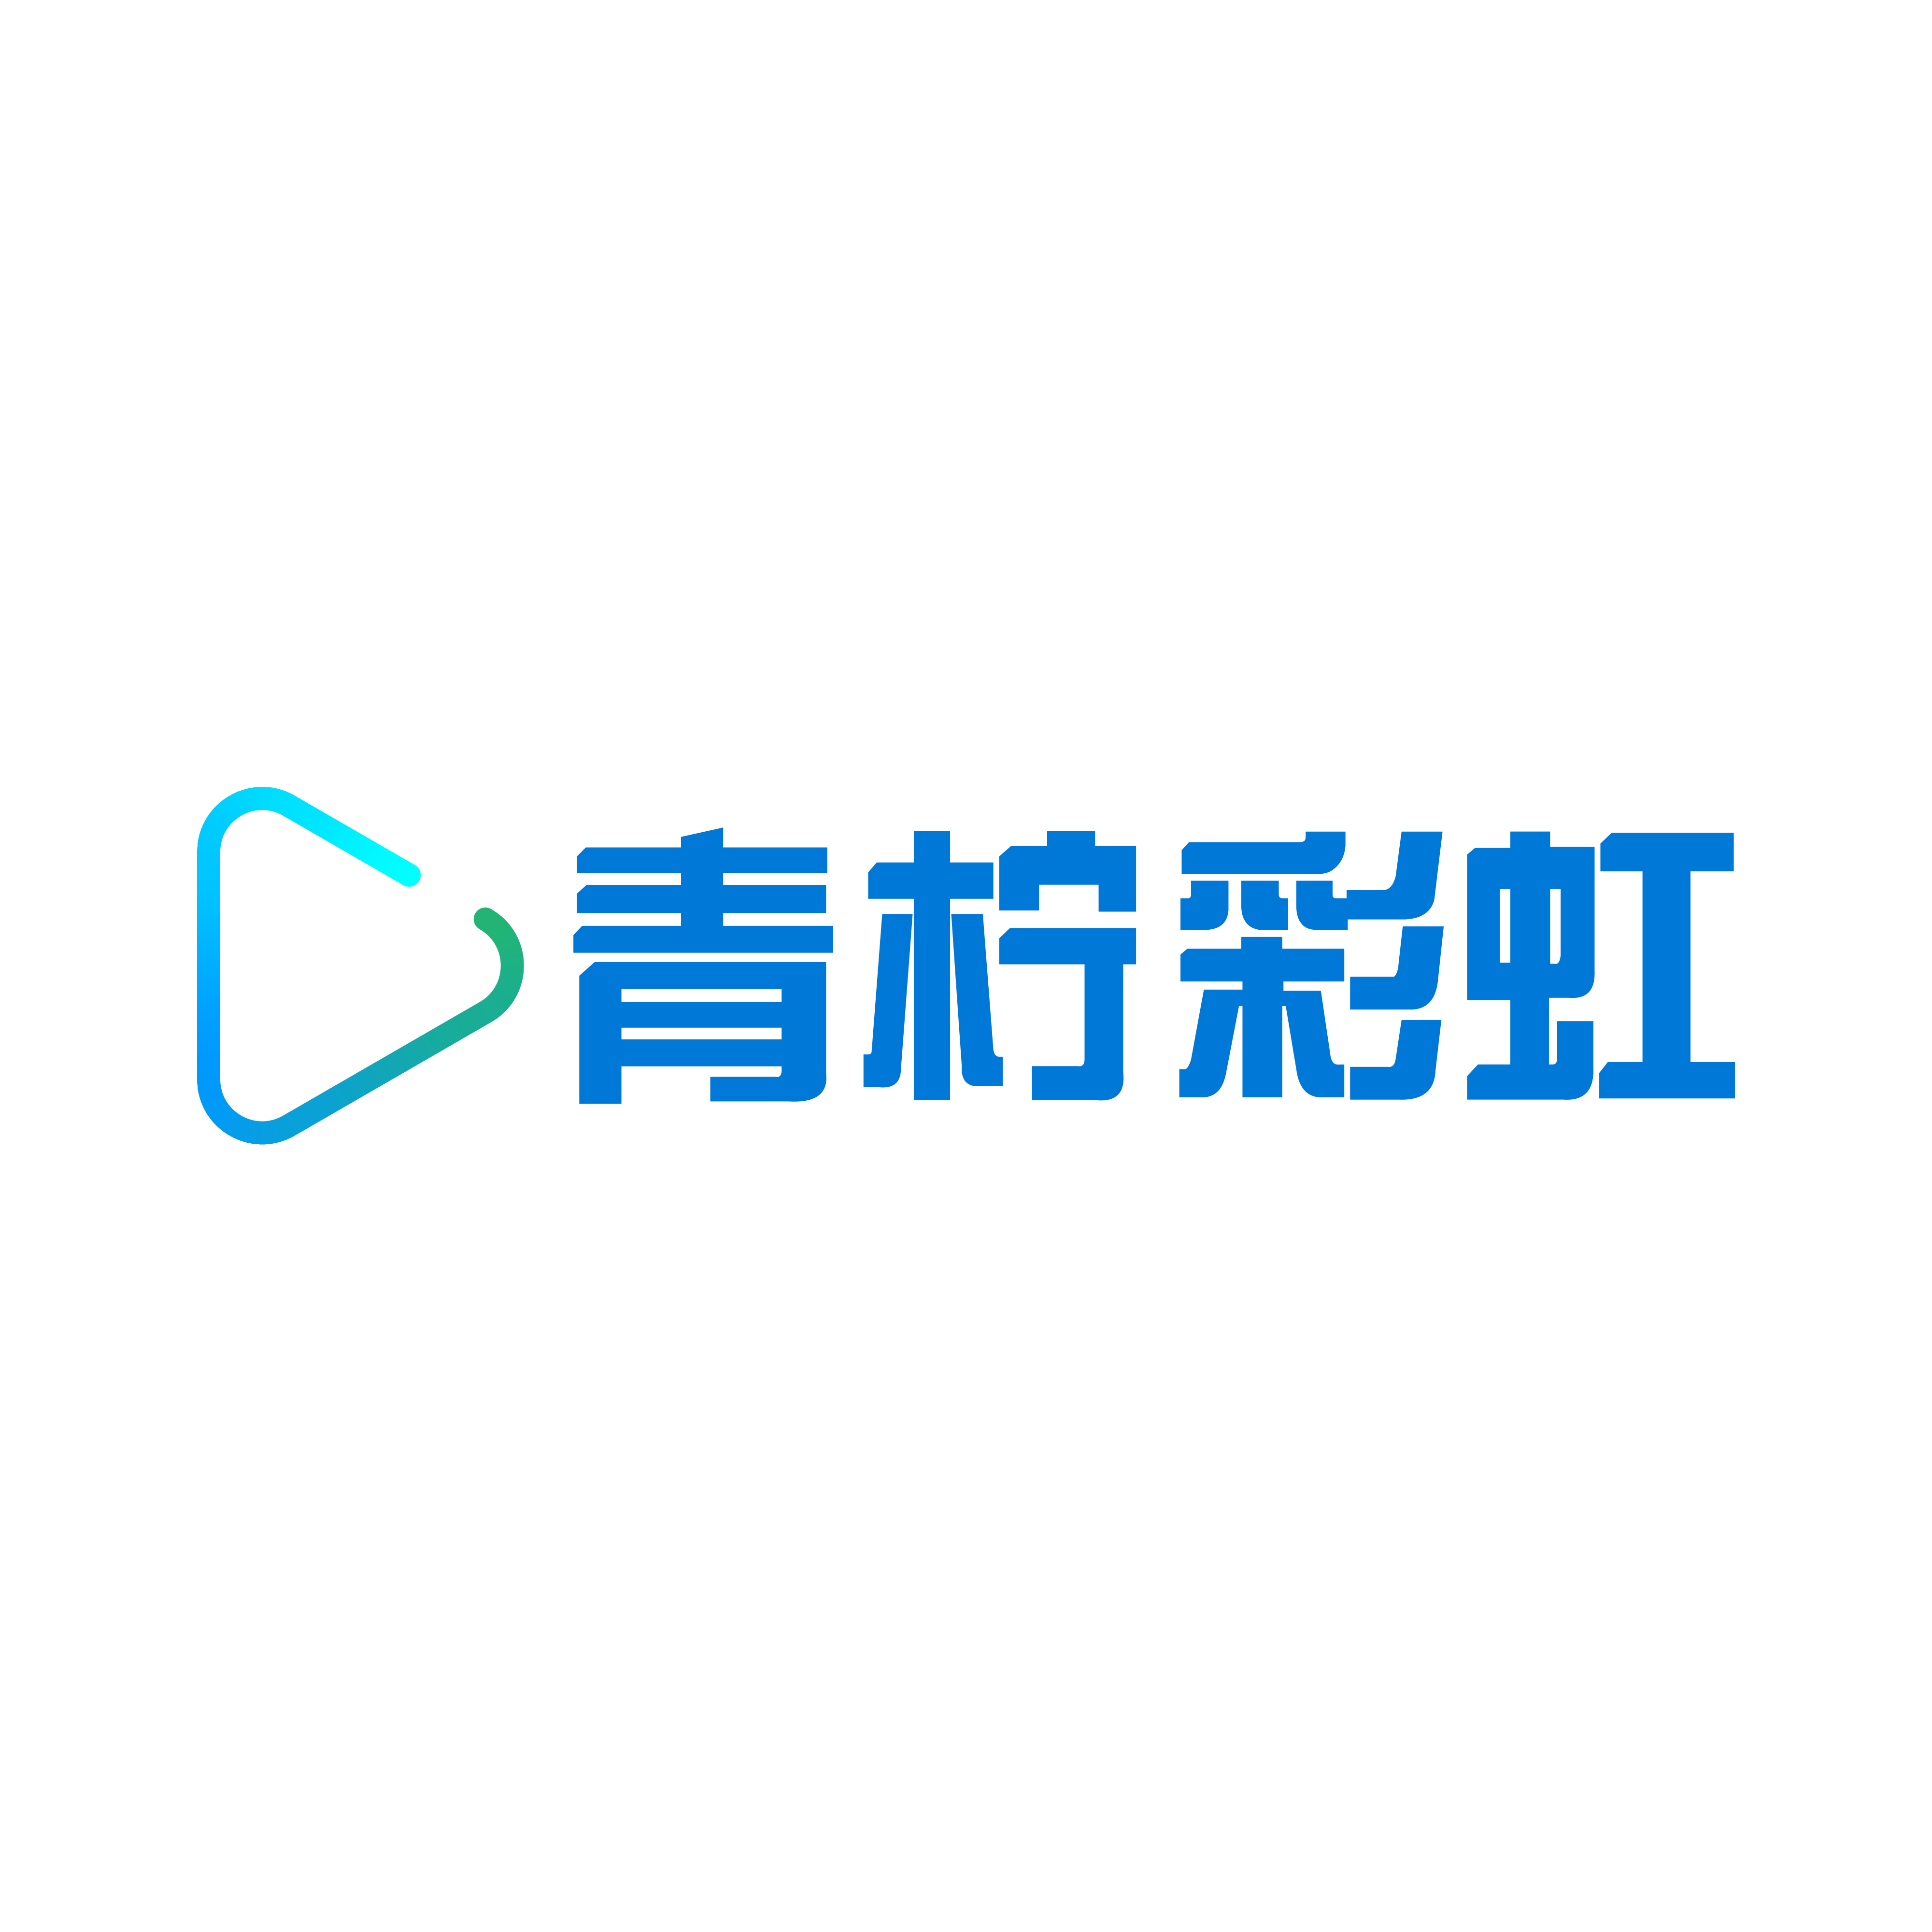 北京青檸彩虹網路科技有限公司